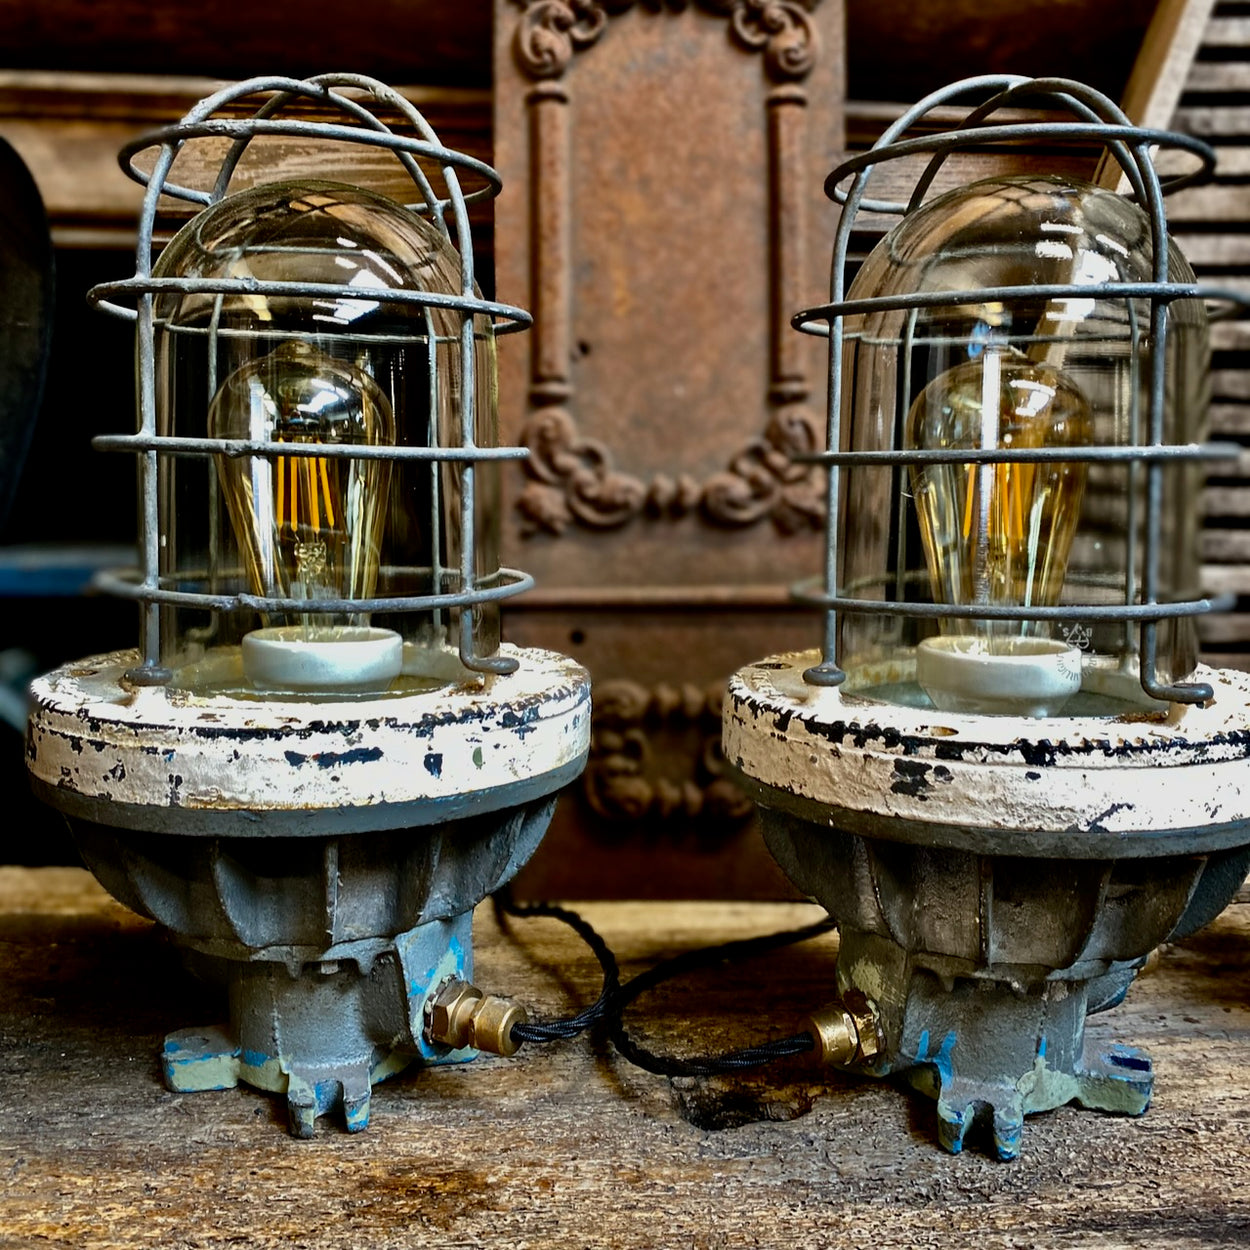 Vintage Flameproof Lamp